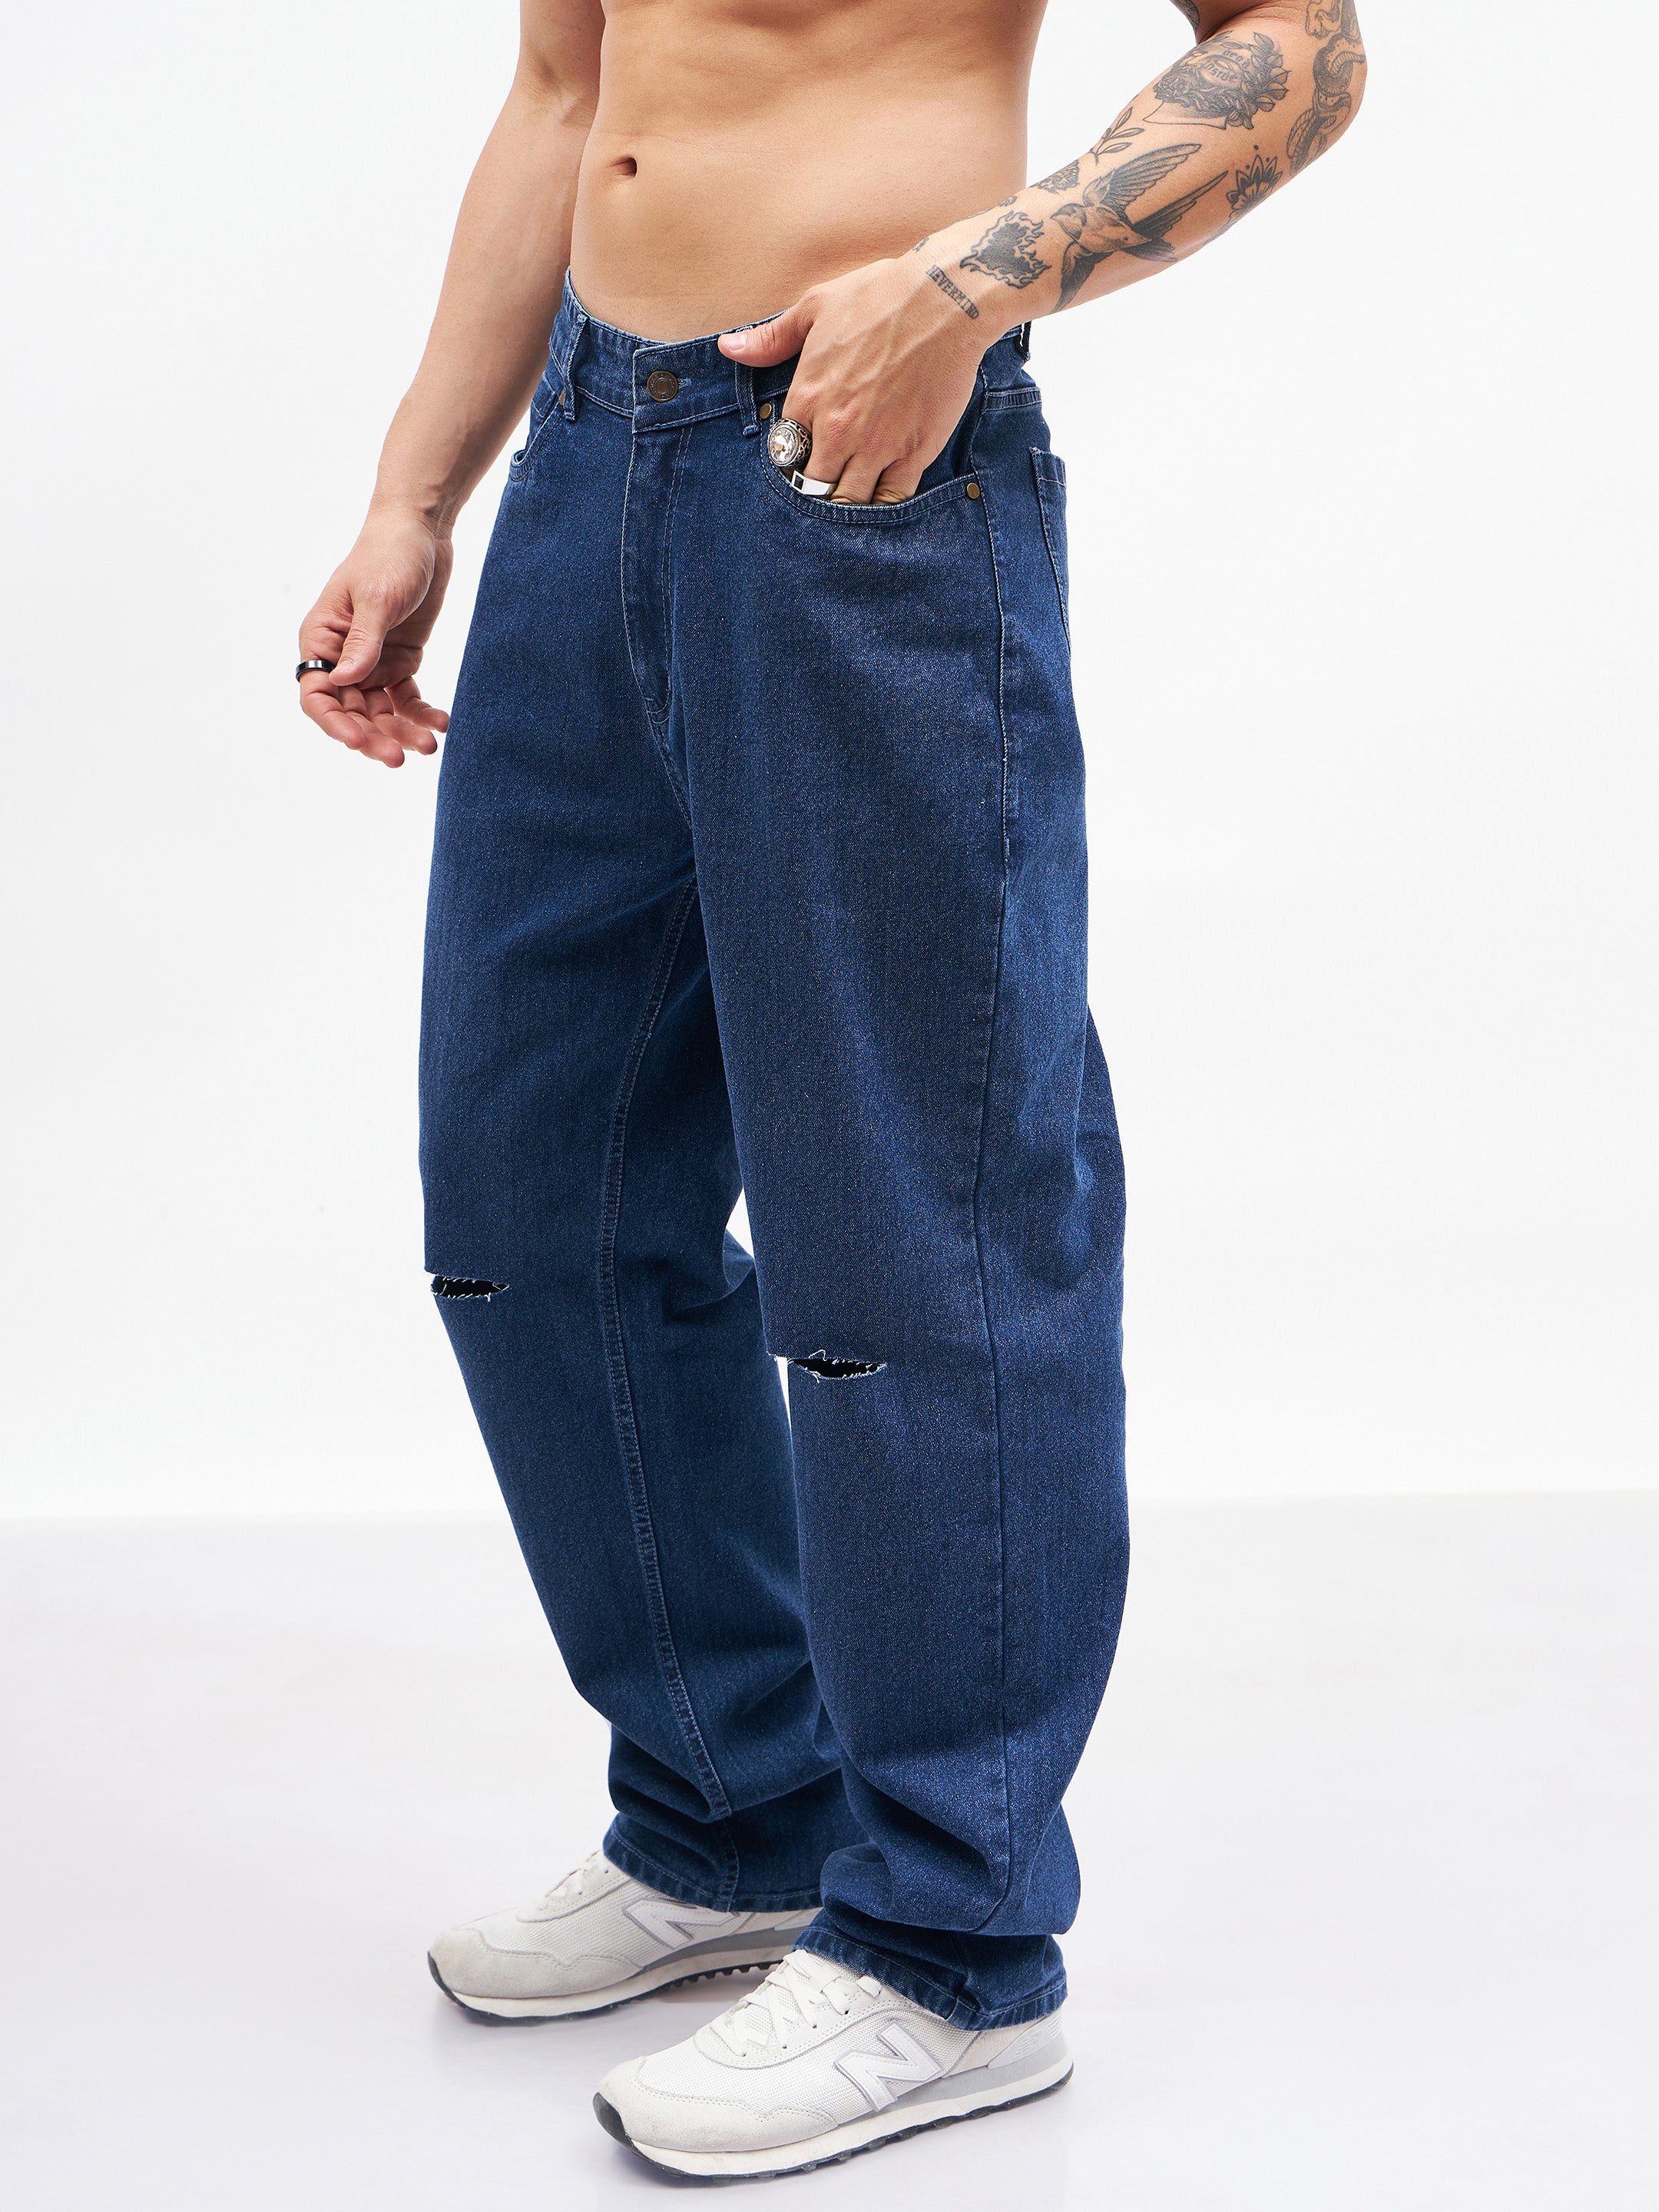 Men's Blue Knee Slit Relax Fit Jeans - MASCLN SASSAFRAS